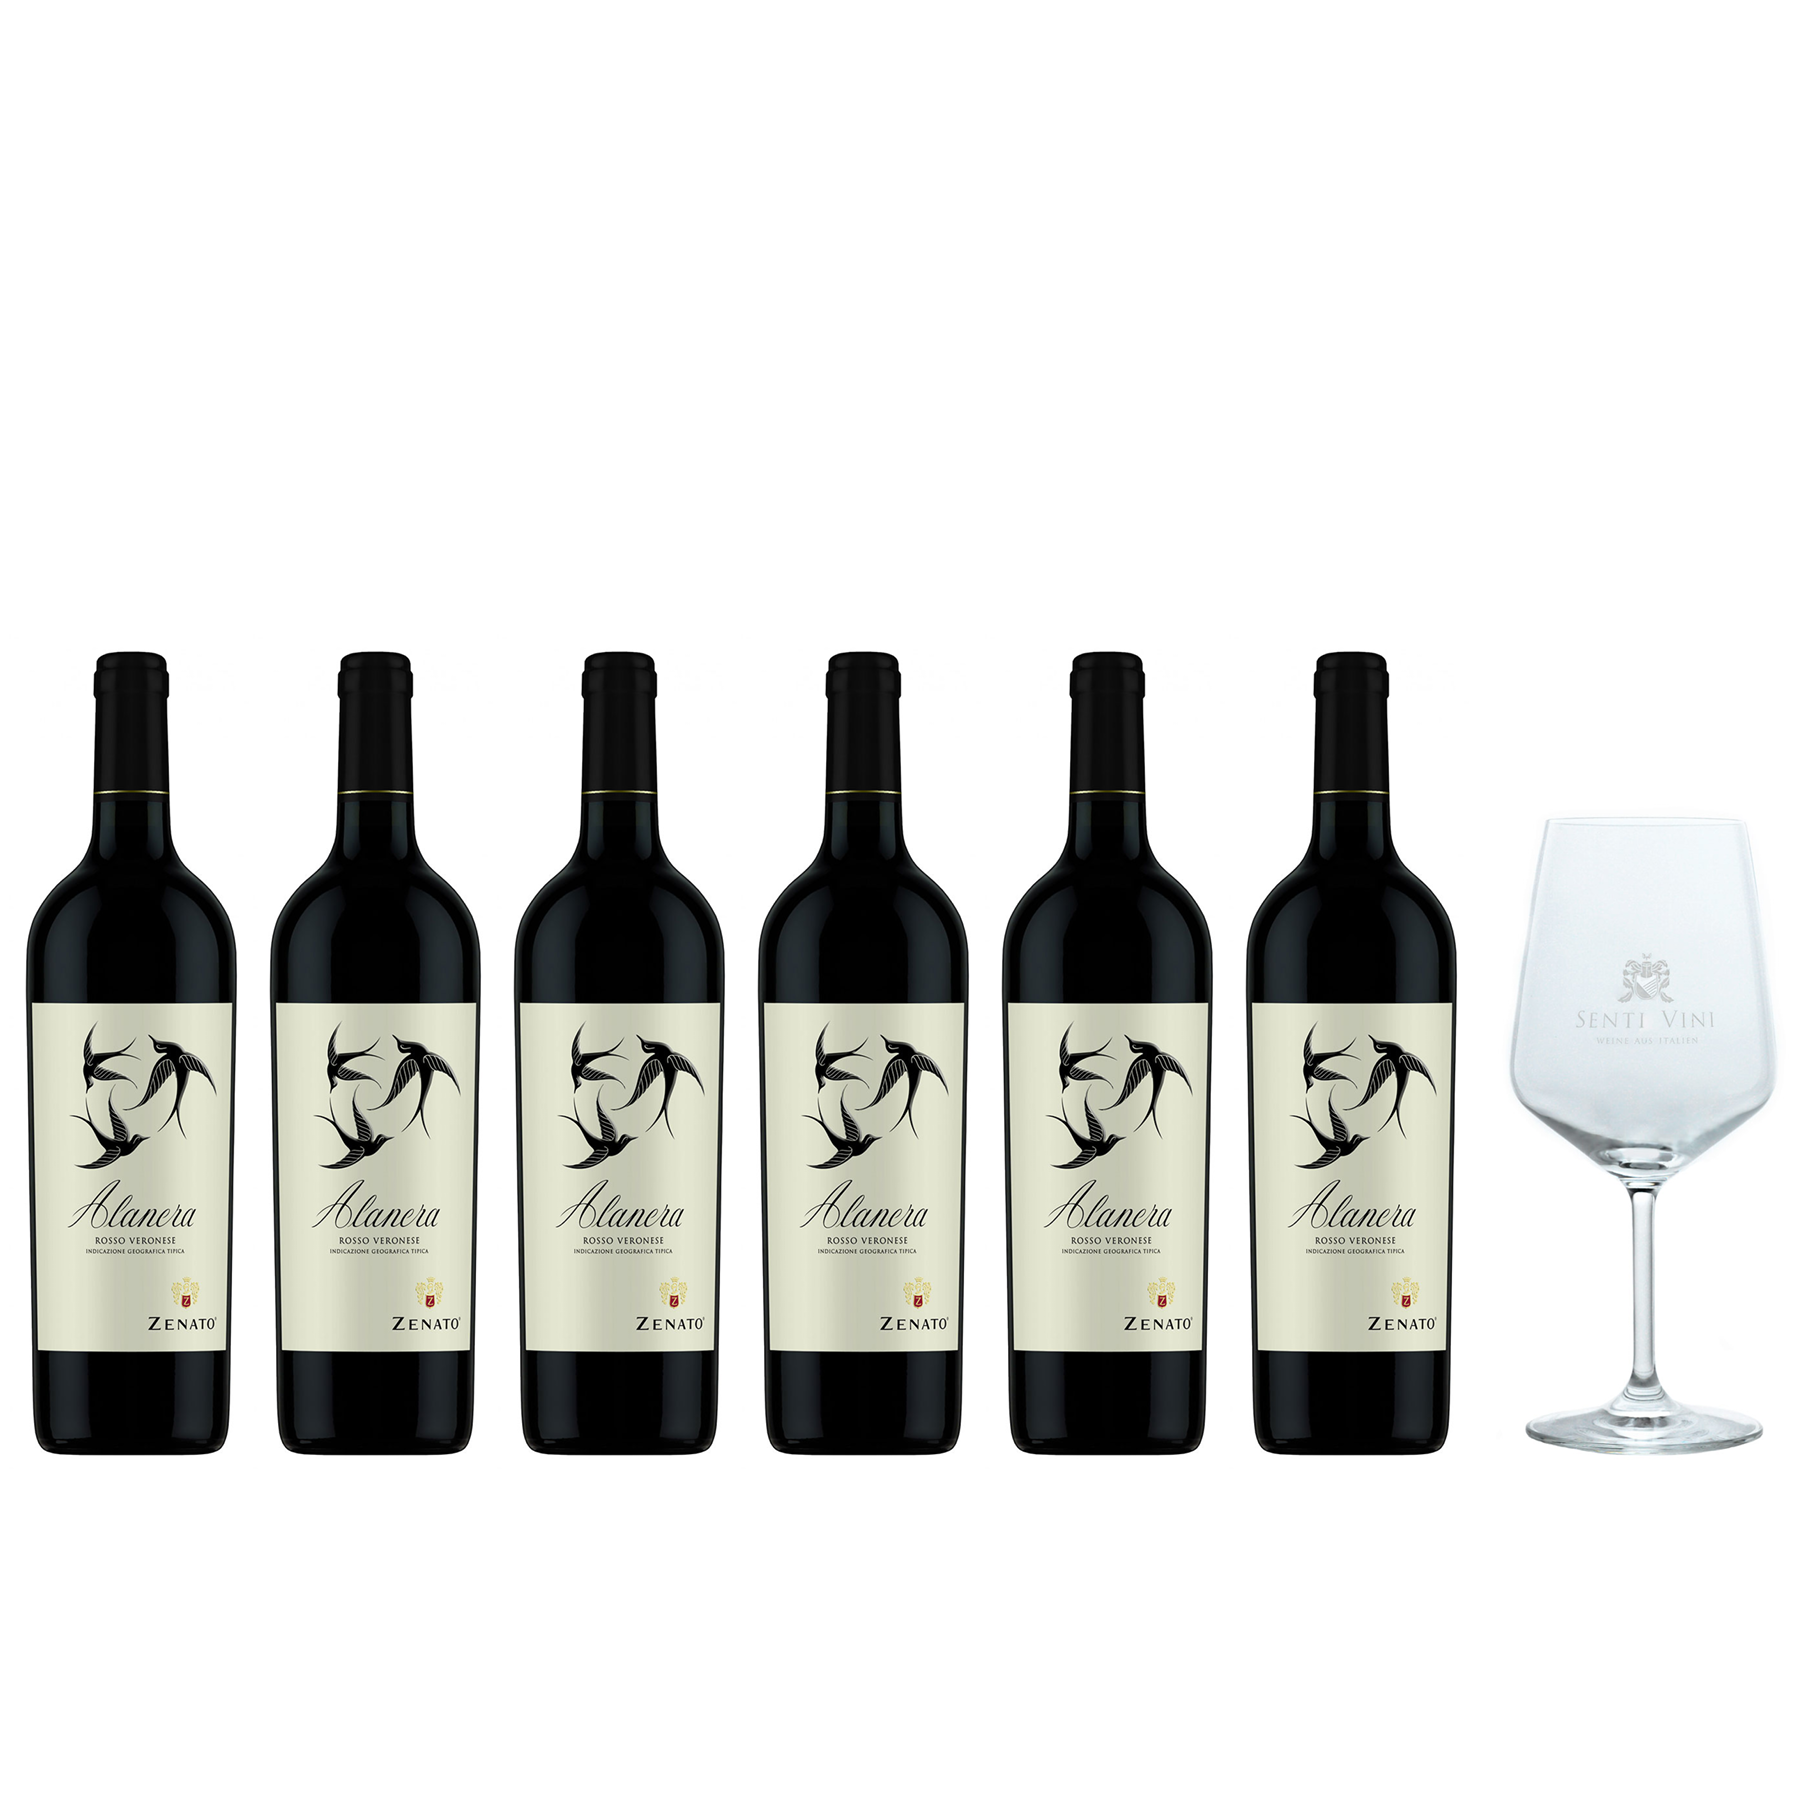 Sparpaket Zenato Alanera Rosso Veneto IGT 2019 (6 x 0,75l) mit Spiegelau  Senti Vini Weinglas | Online kaufen bei Senti Vini - Weine aus Italien